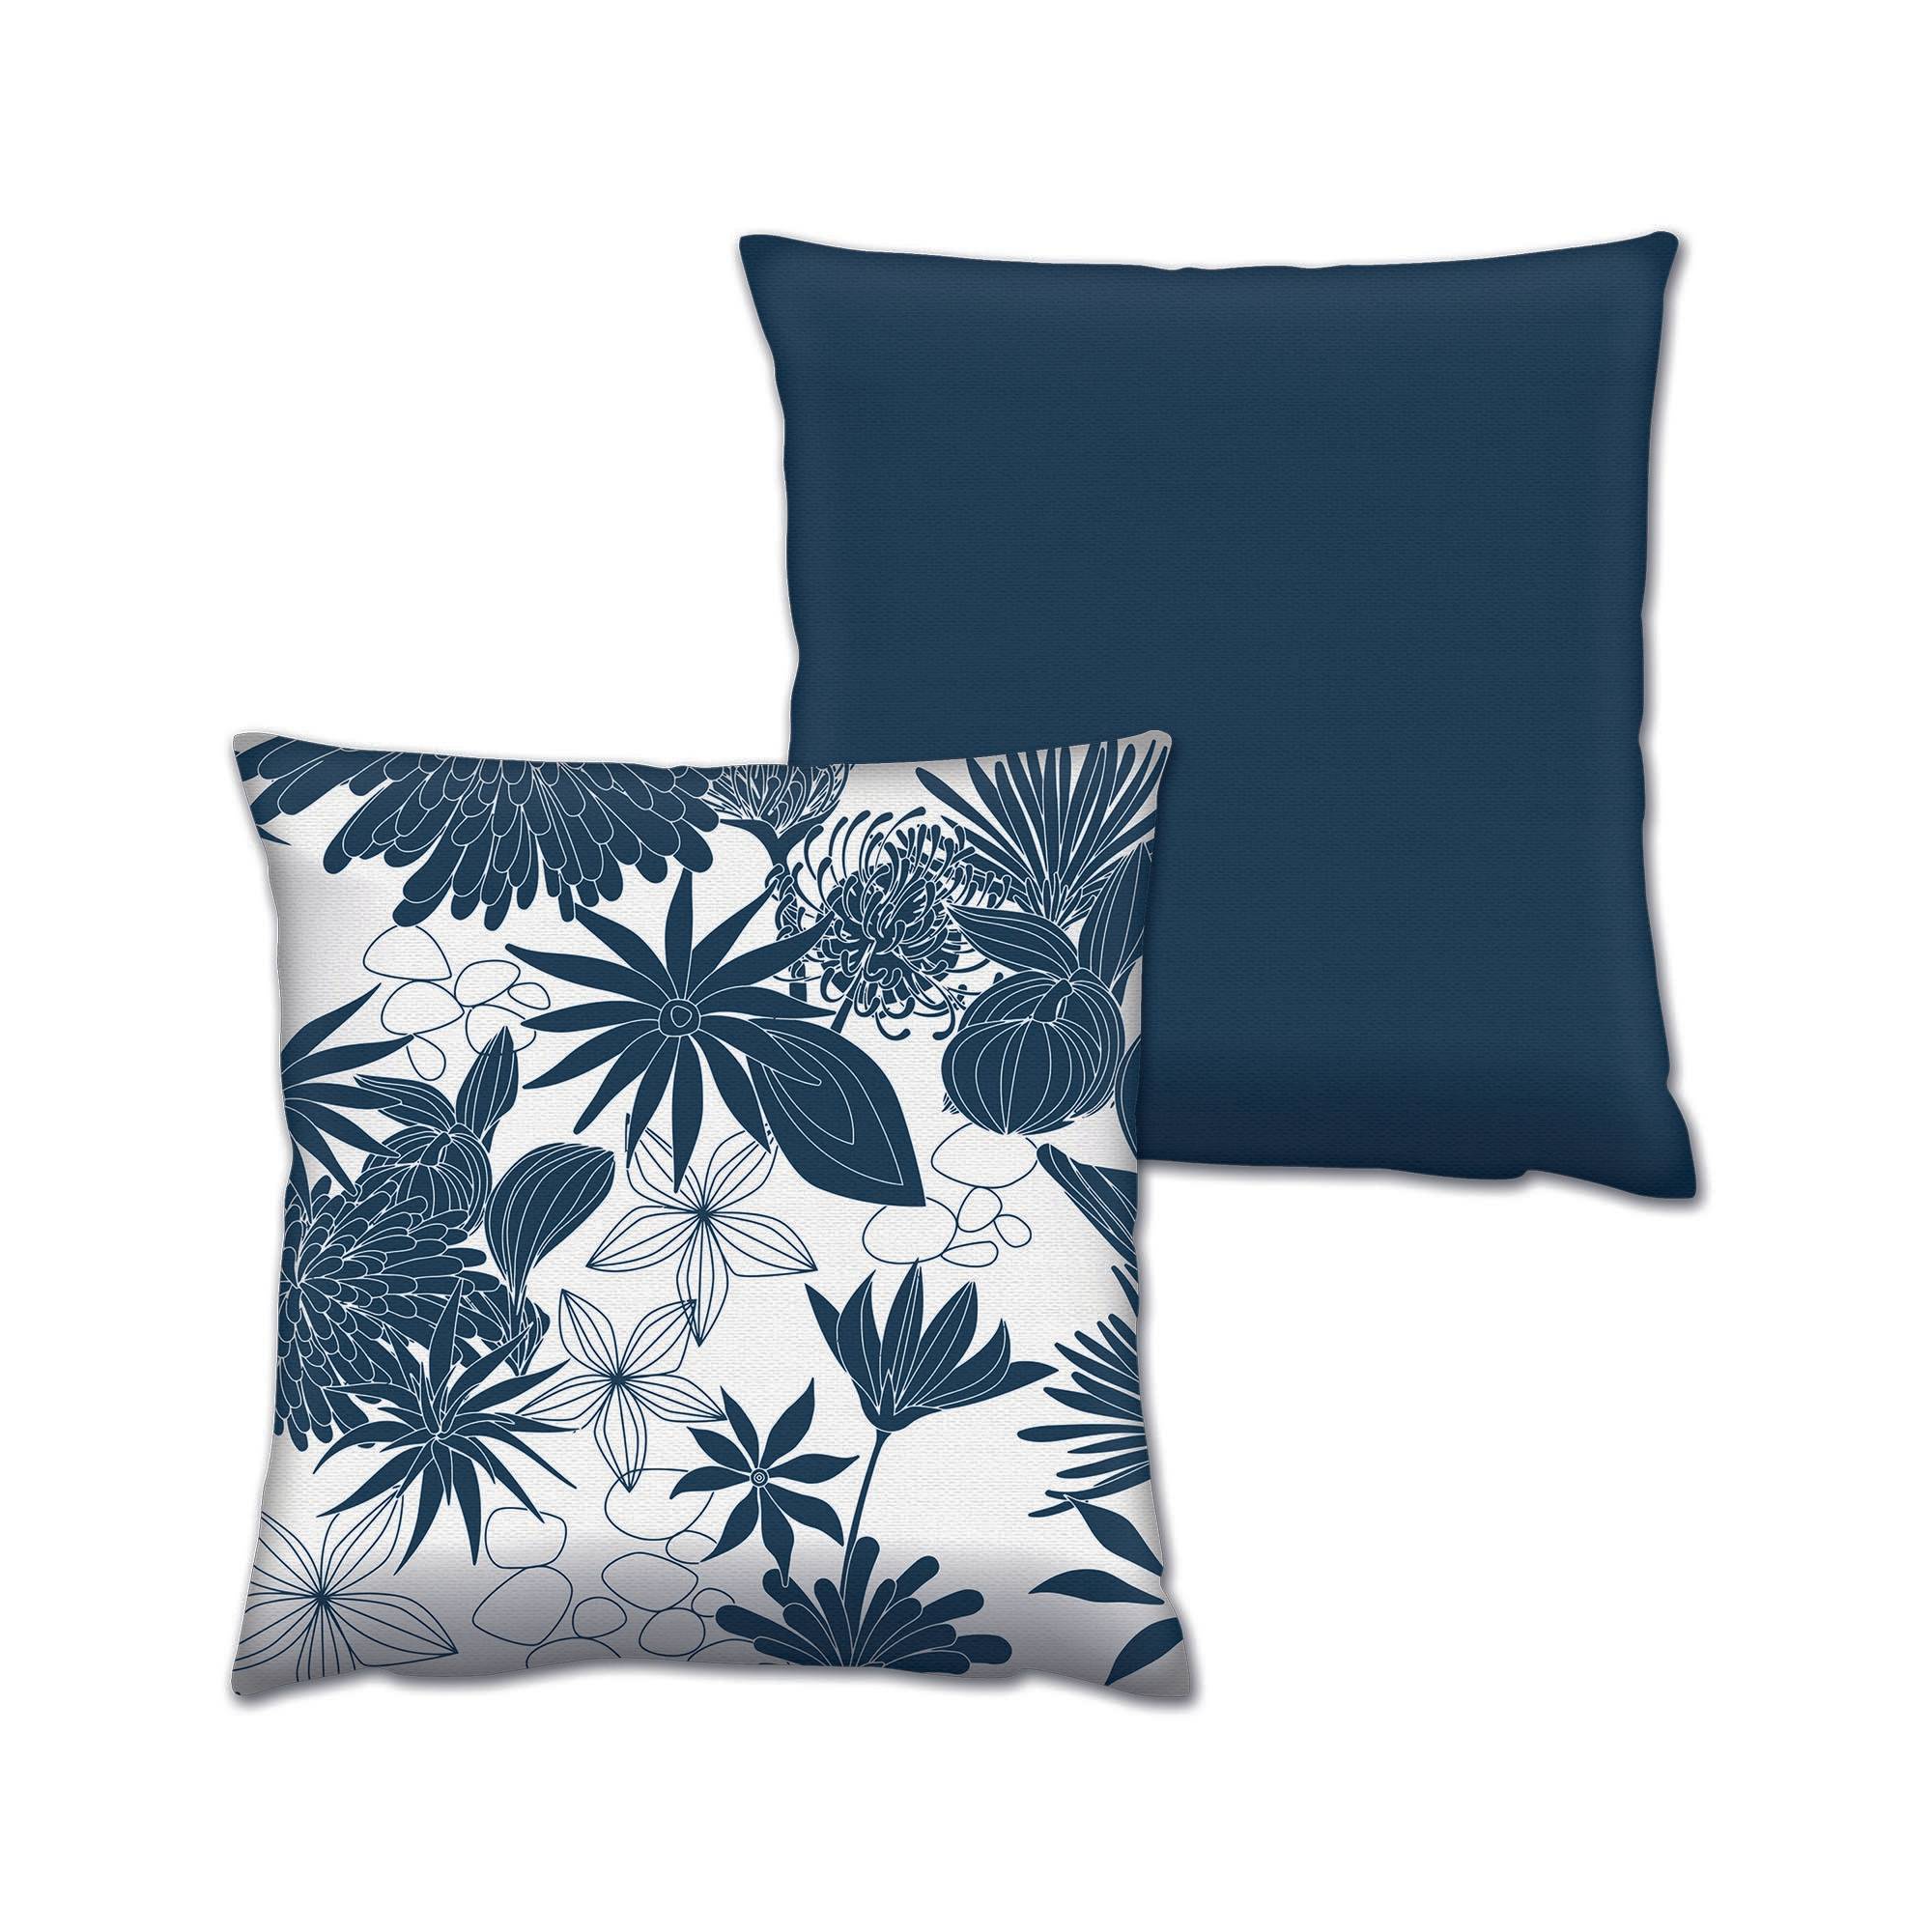 Set bestehend aus 2 passenden Kissen Decorare Floral 43 x 43 cm Baumwolle Polyester Nachtblau